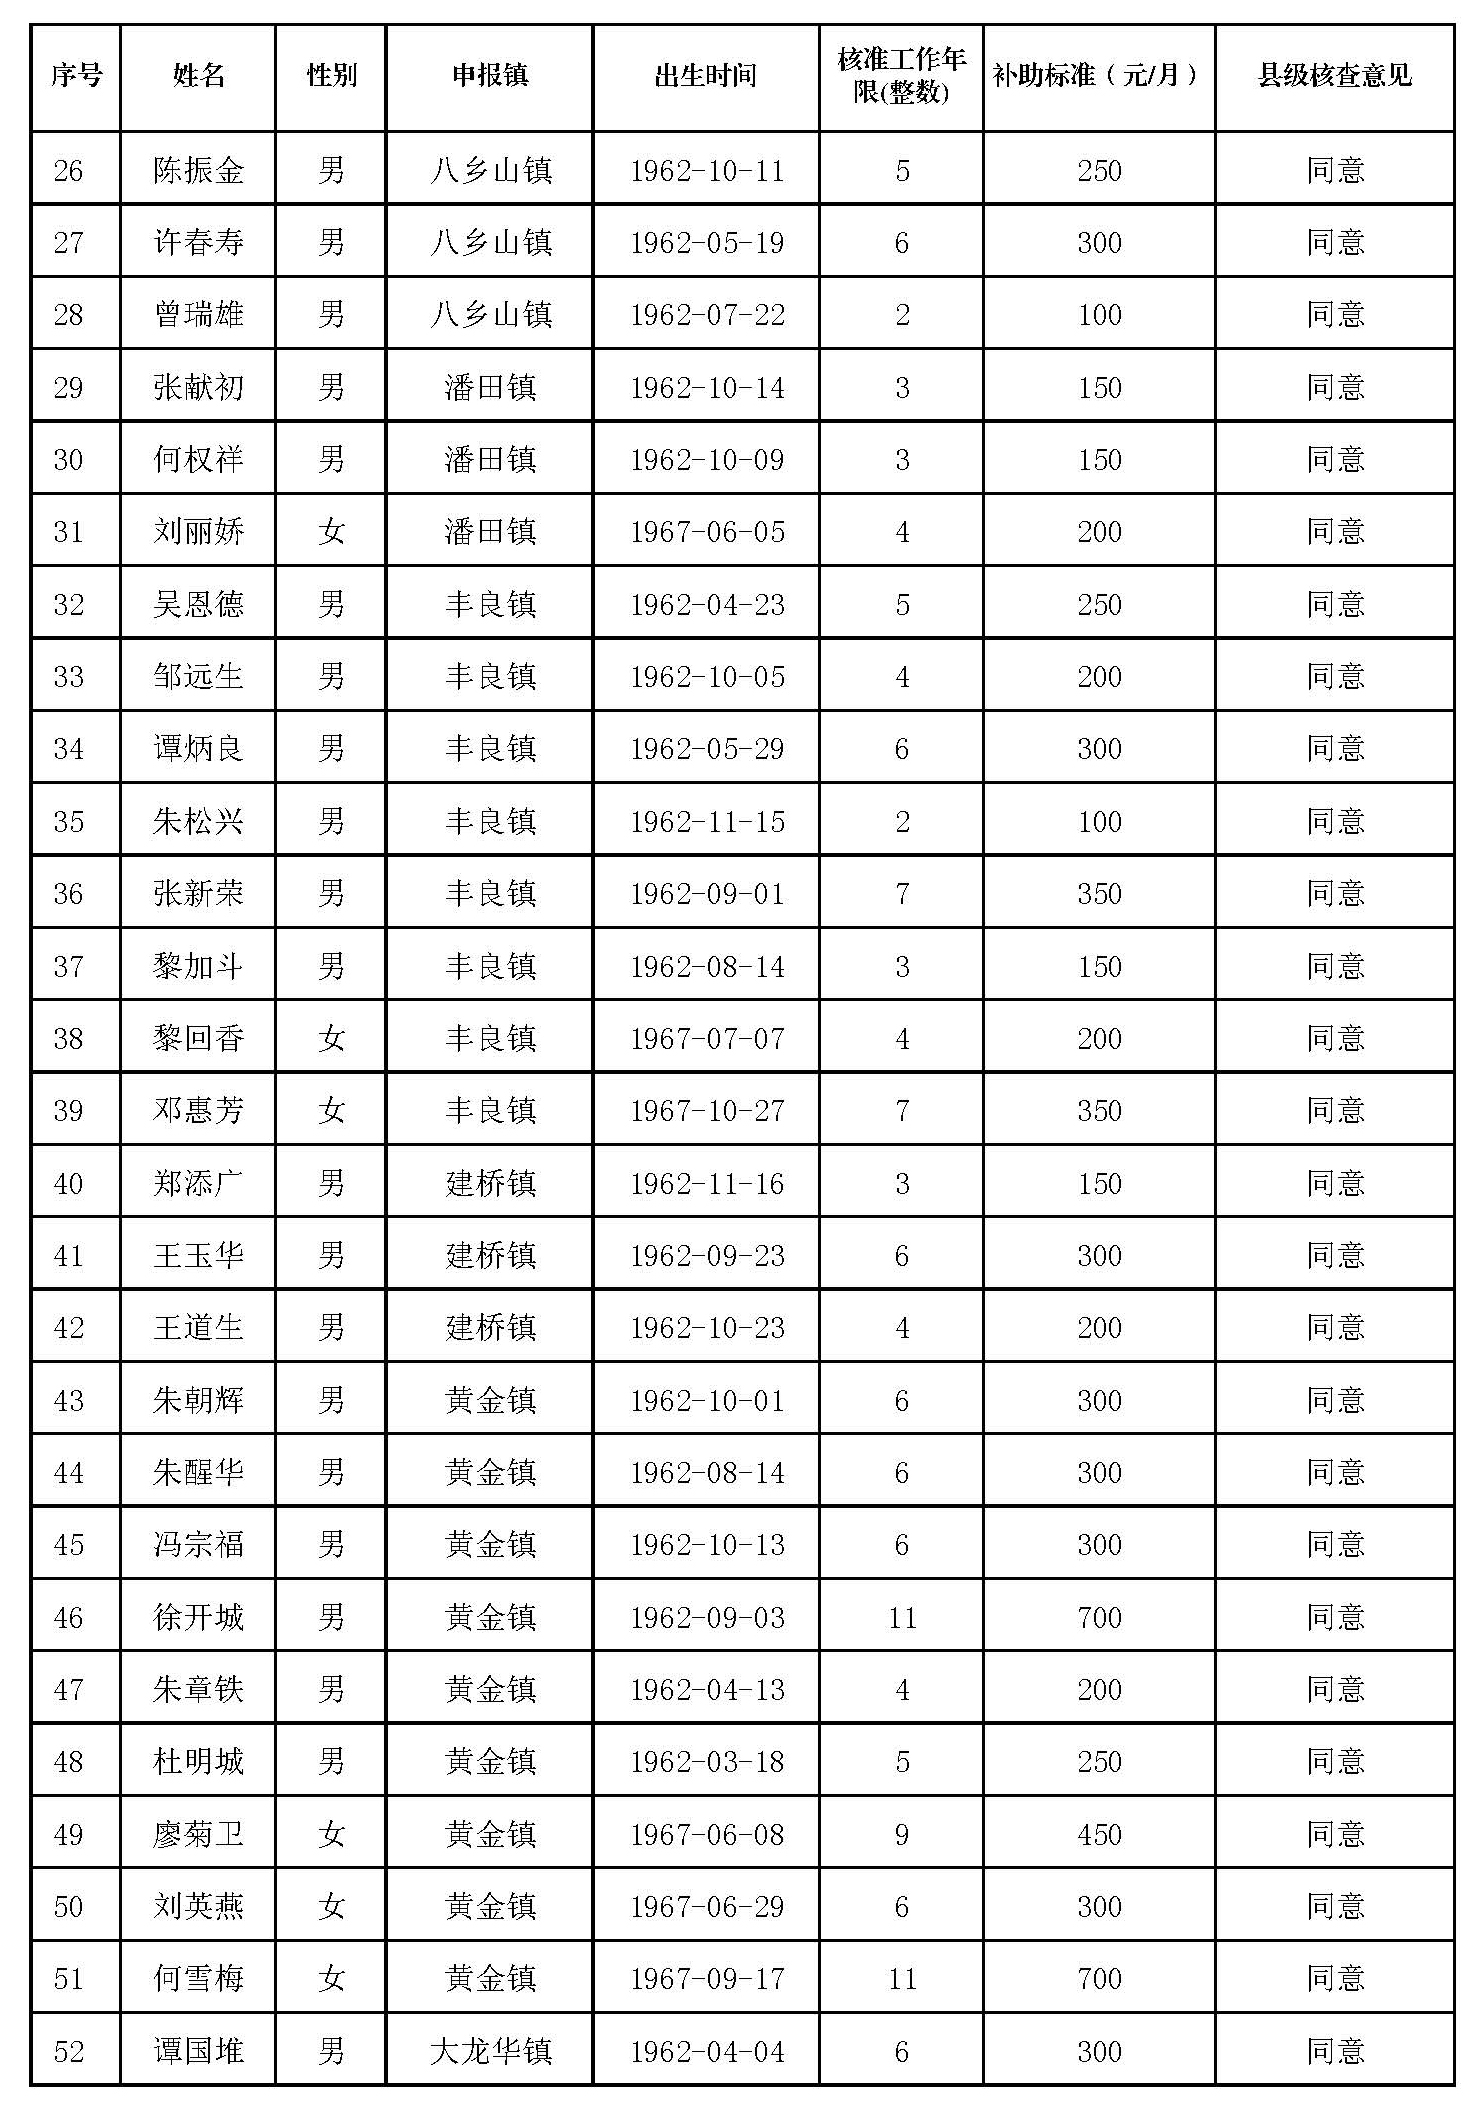 丰顺县原民办代课教师2022年度新增生活困难补助发放对象名册表_页面_2.jpg